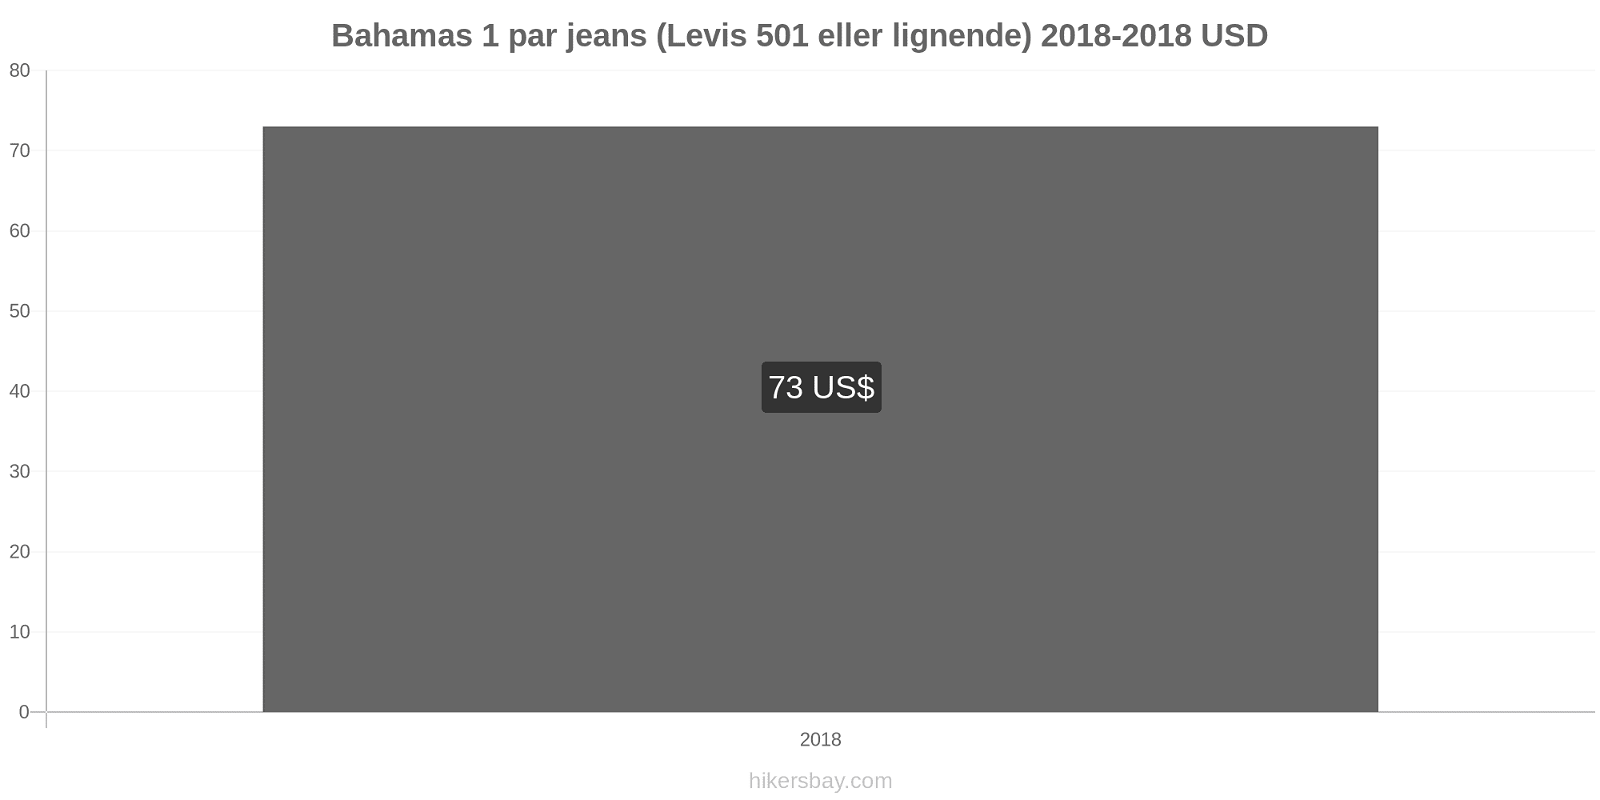 Bahamas prisændringer 1 par jeans (Levis 501 eller lignende) hikersbay.com